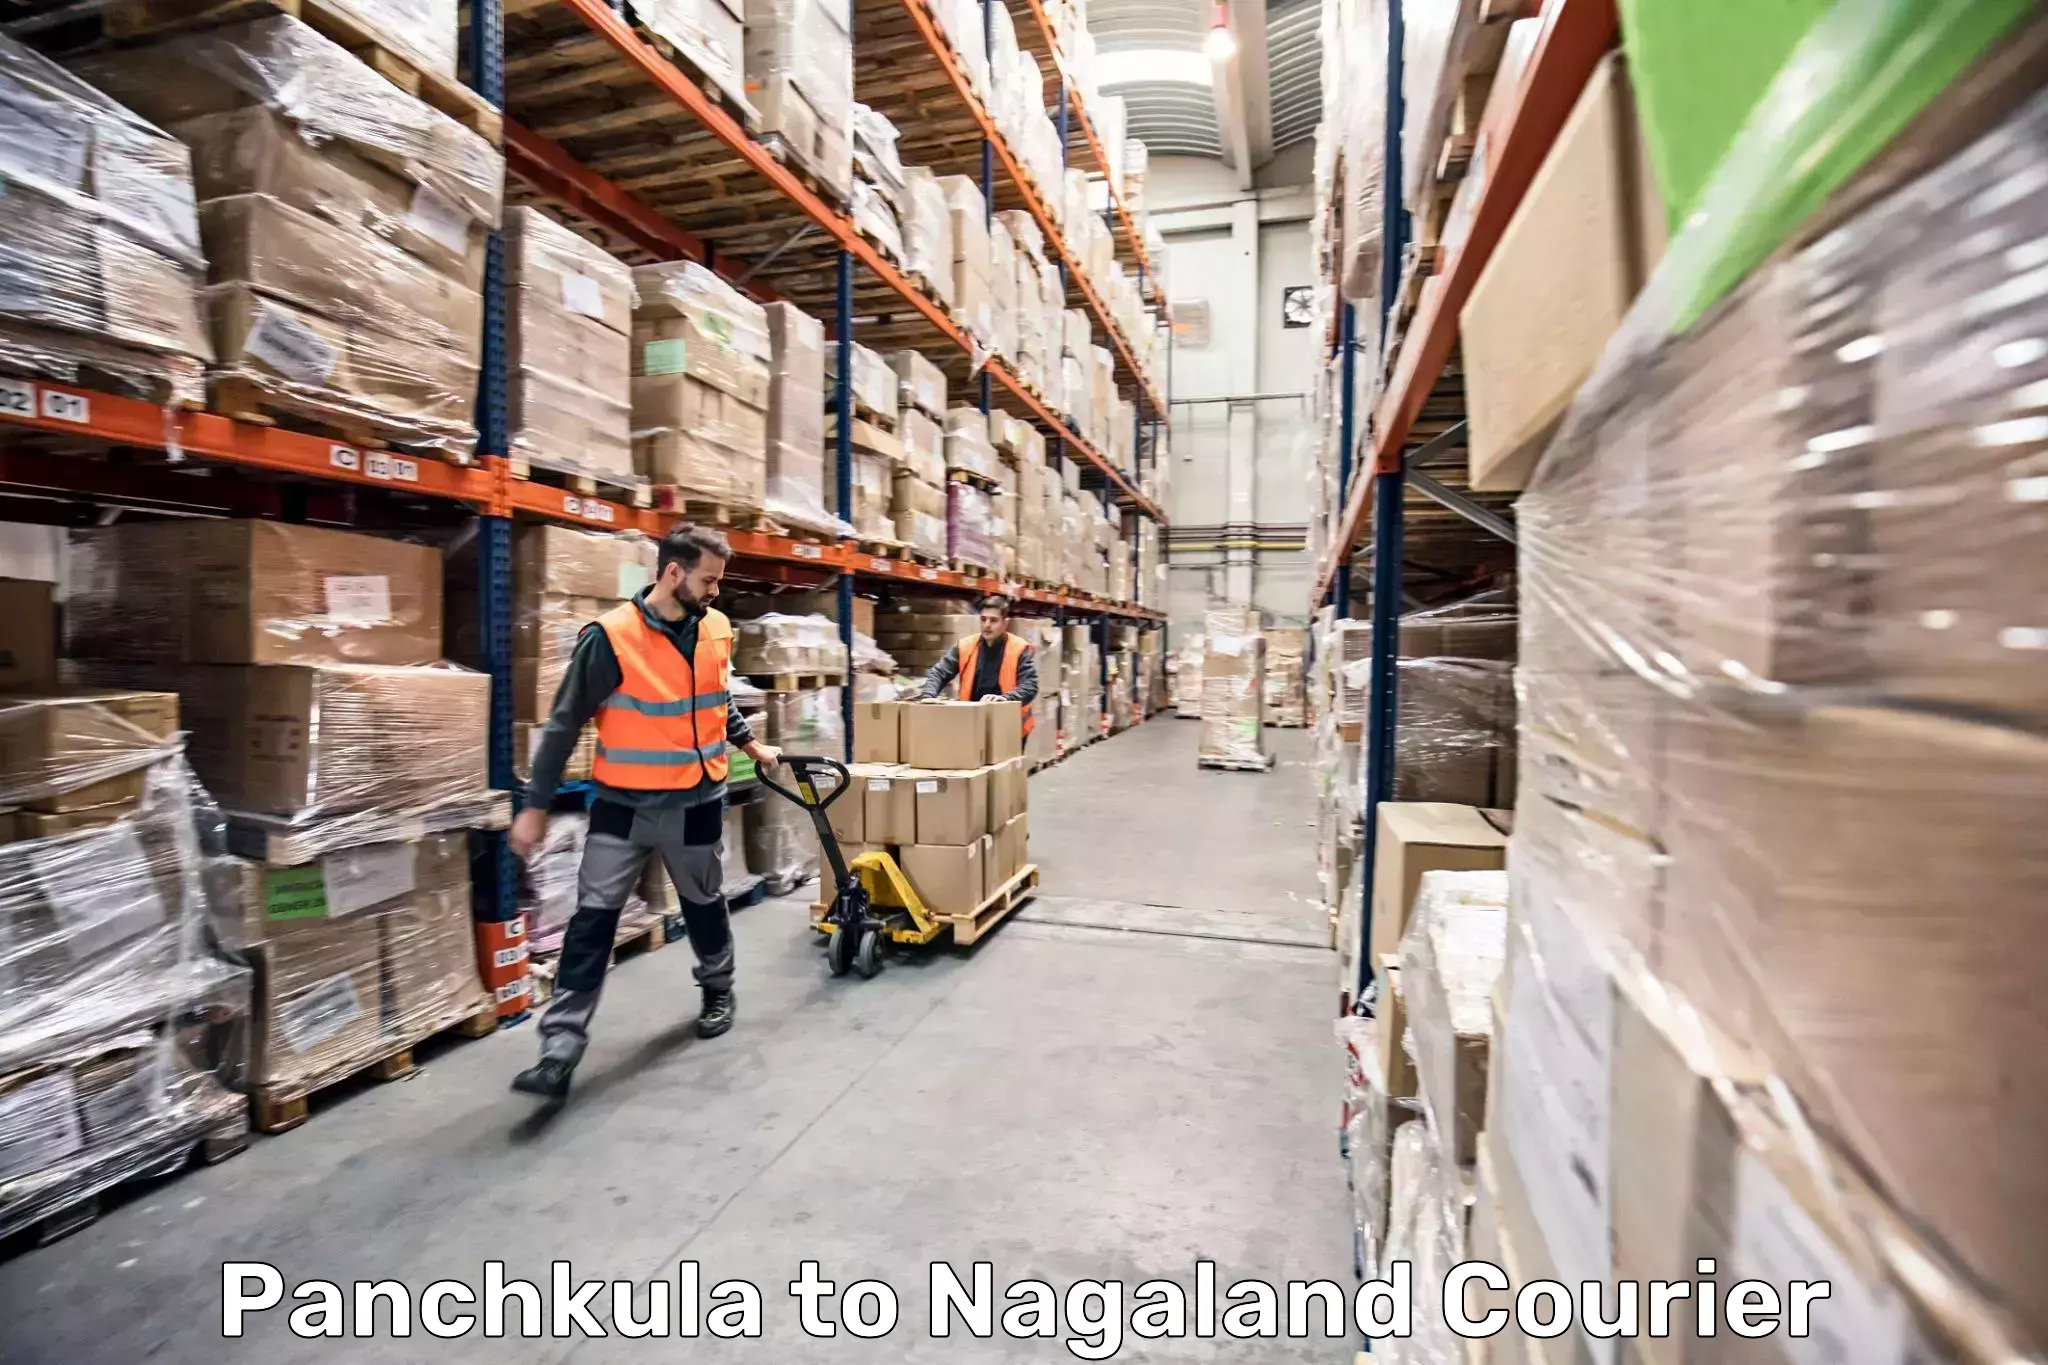 Baggage delivery management Panchkula to Nagaland